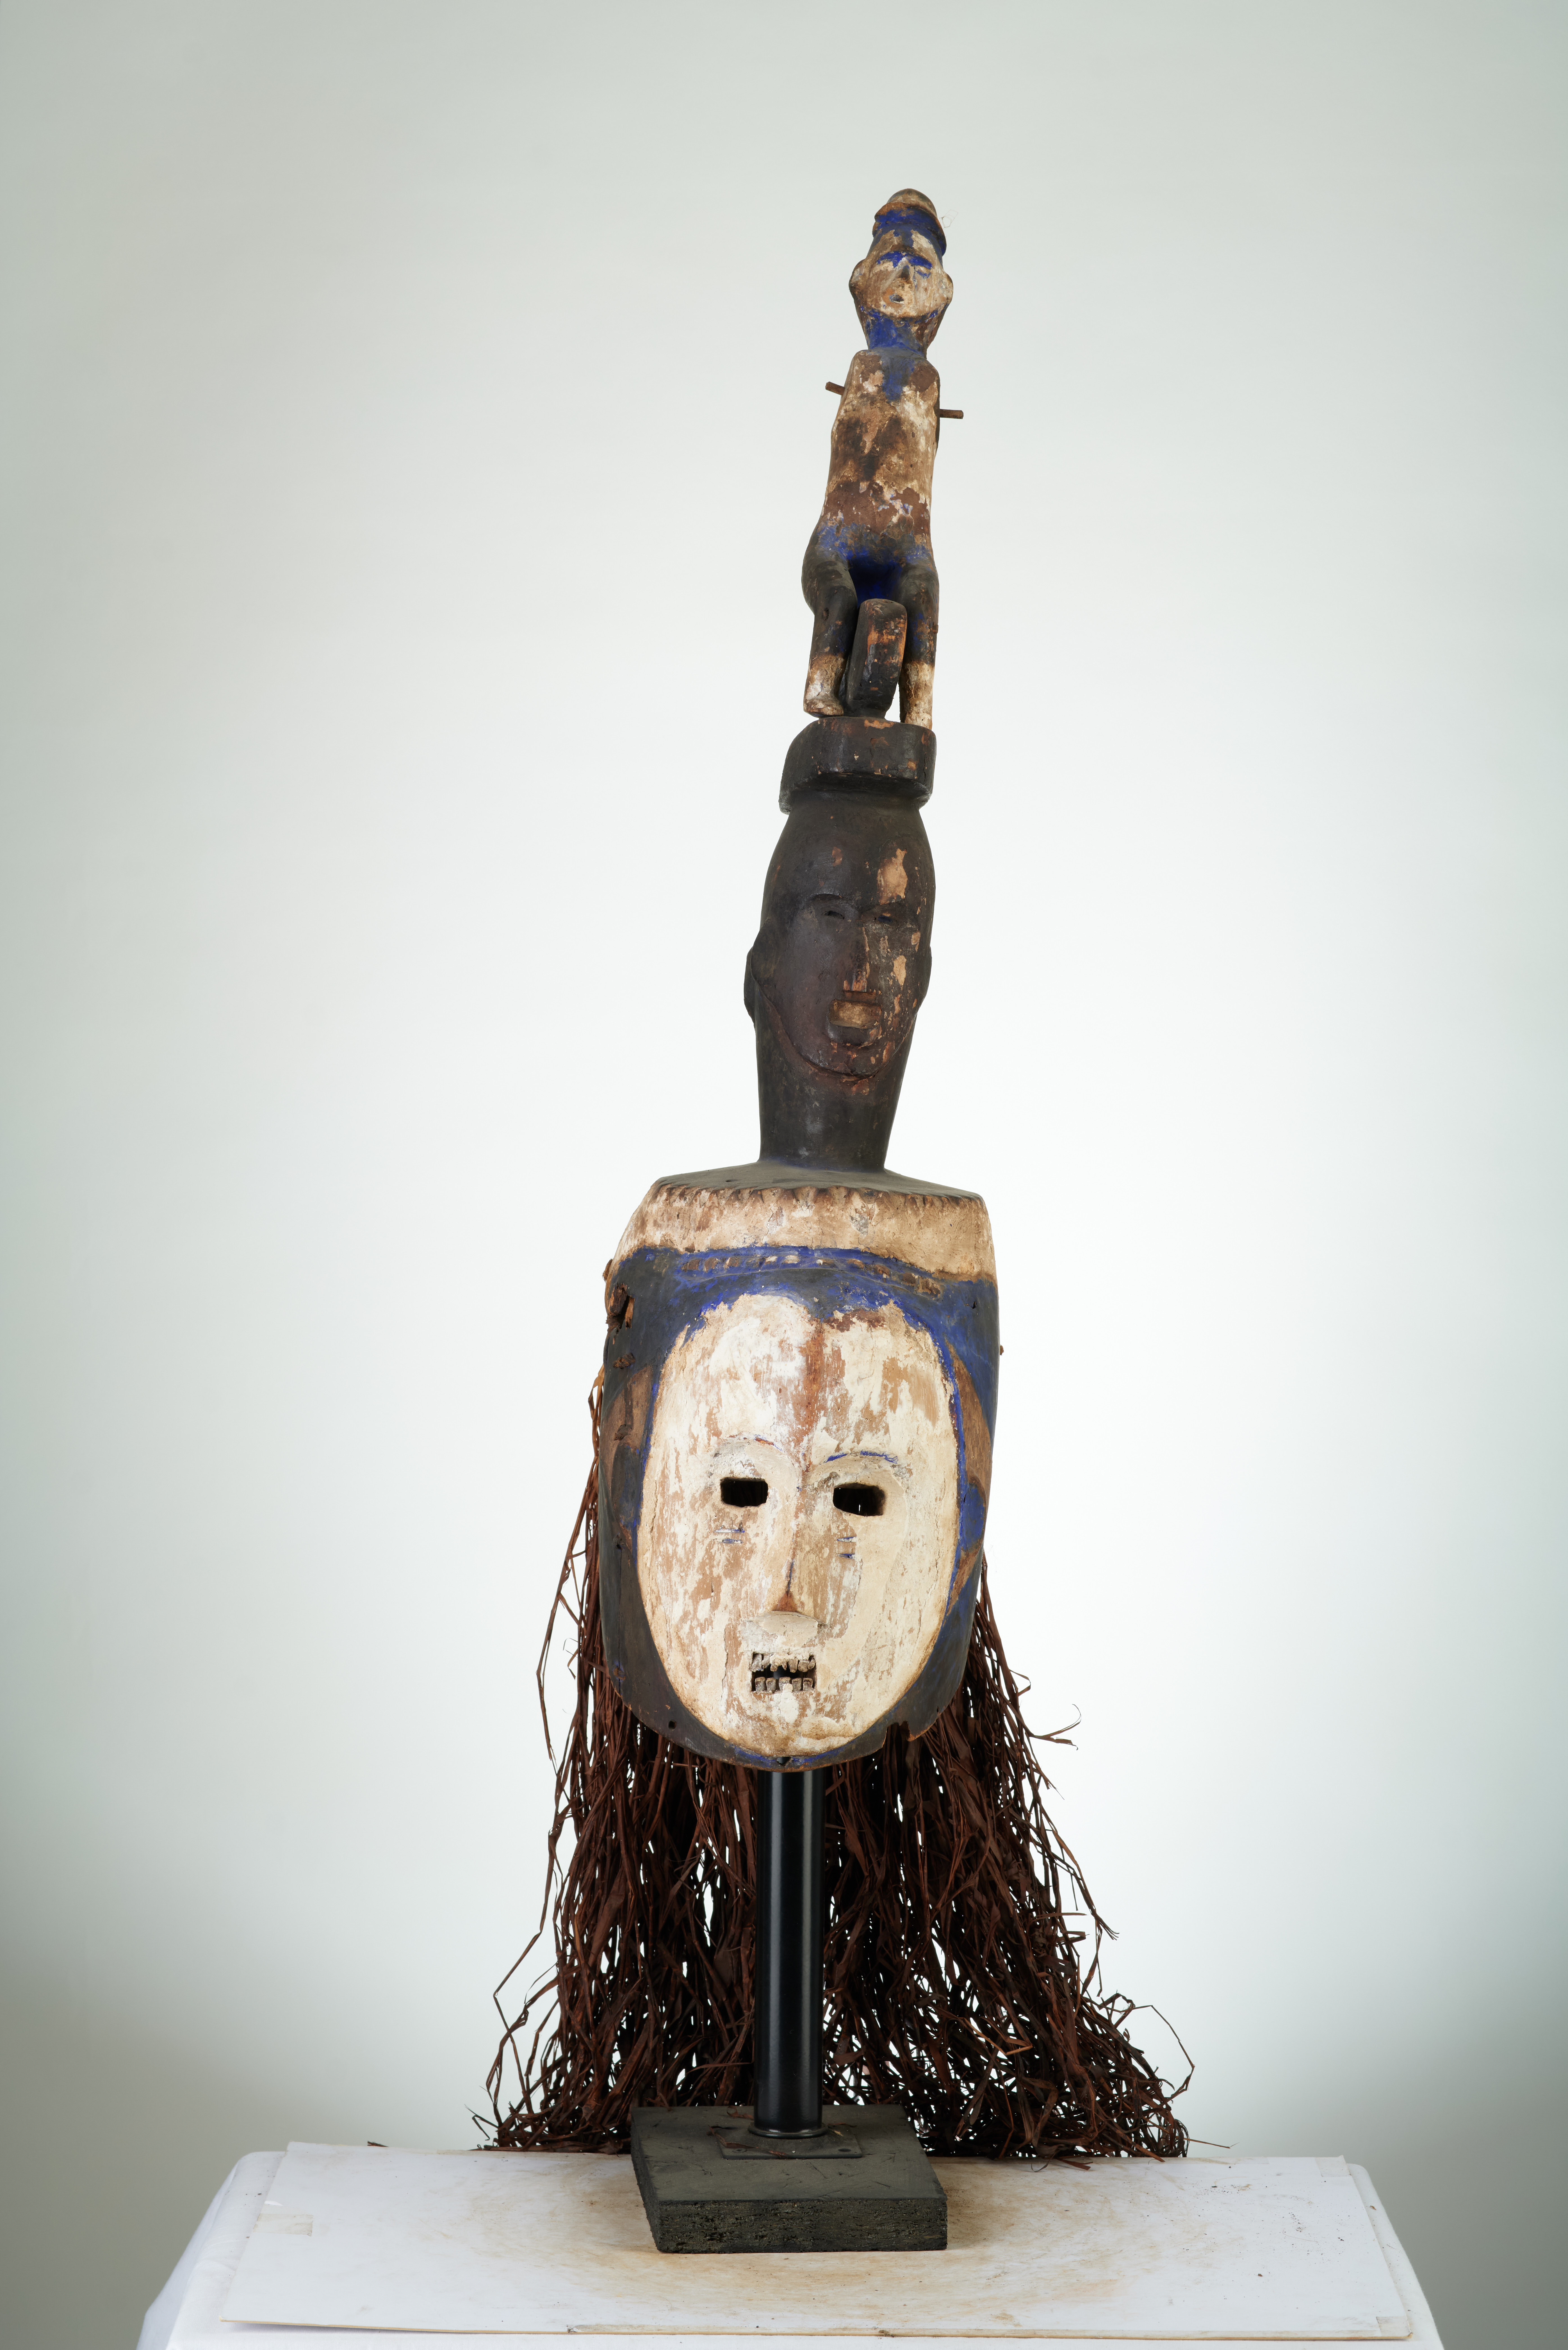  IGbo (masque), d`afrique : Nigéria, statuette  IGbo (masque), masque ancien africain  IGbo (masque), art du Nigéria - Art Africain, collection privées Belgique. Statue africaine de la tribu des  IGbo (masque), provenant du Nigéria, 716/412Masque au visage blanc ,masque féminin aux traits fins  et bénéfiques,surmonté de multiples figures utilisés dans les régions Igbo,les oreilles sont absentes, ce qui fait penser que c